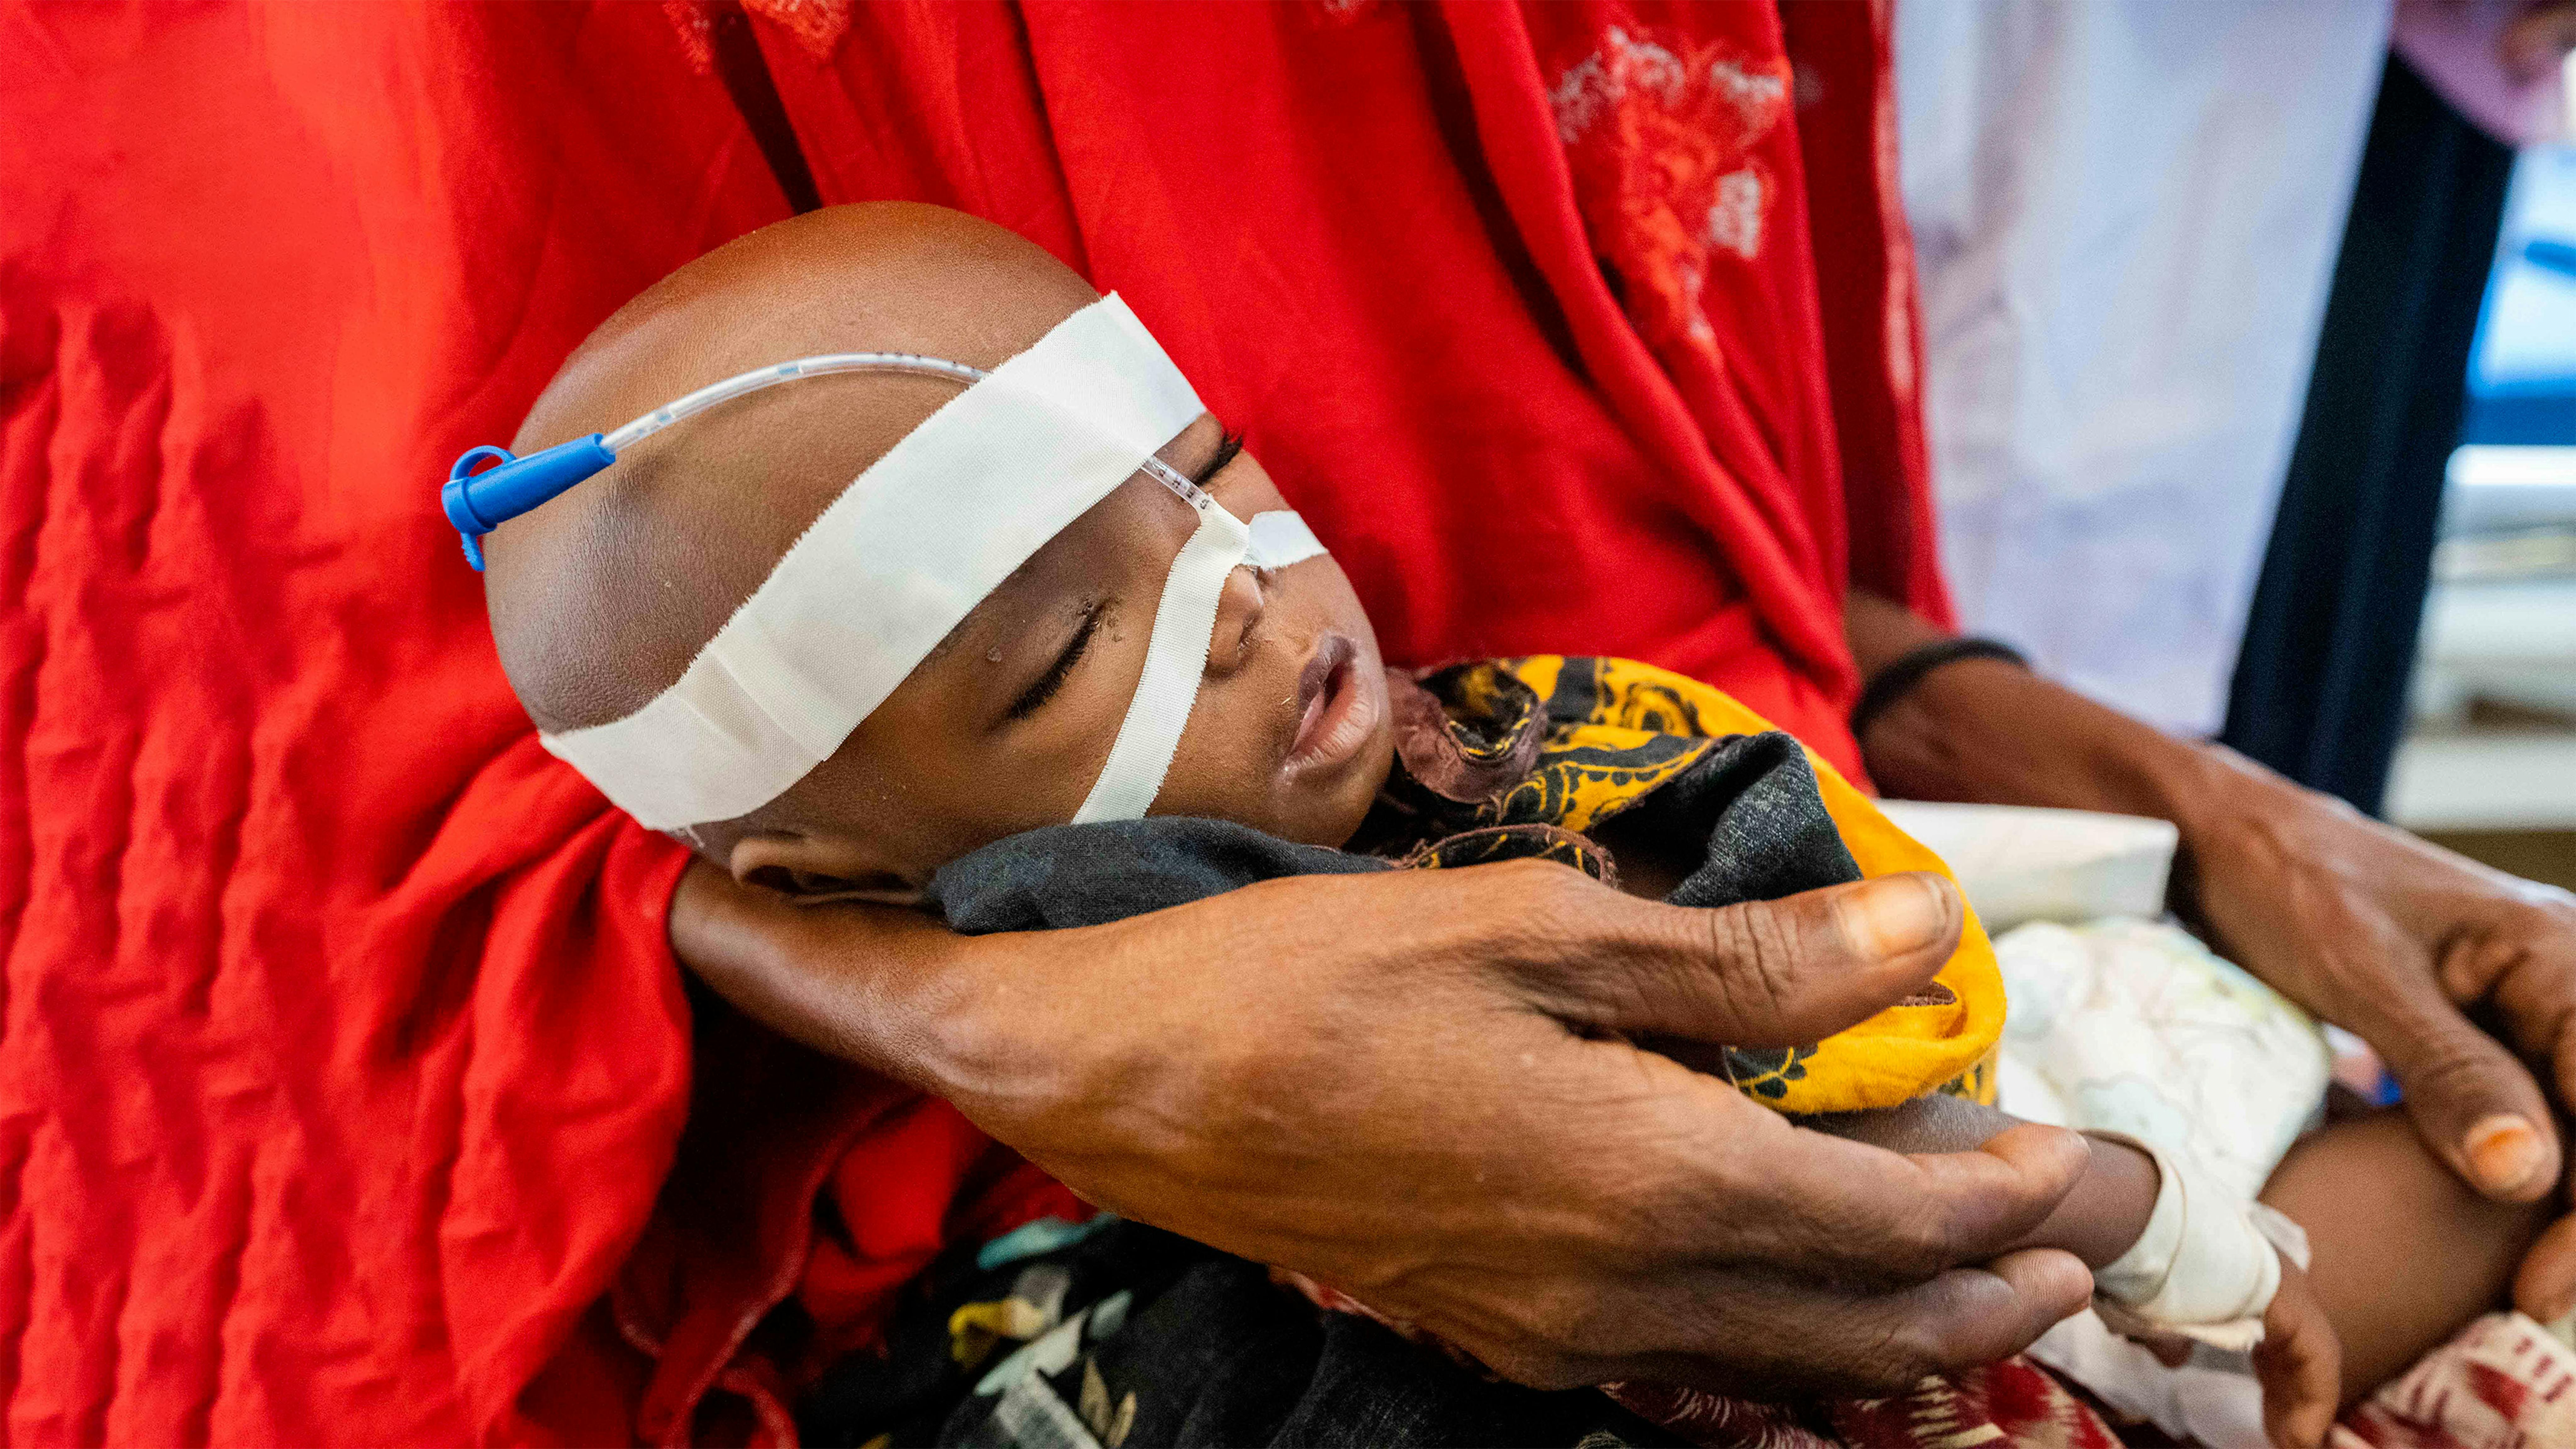 Somalia - Adam riposa sulle mani di sua nonna in un centro di stabilizzazione dell'ospedale di Banadir. È arrivato quattro giorni fa con complicazioni e grave malnutrizione